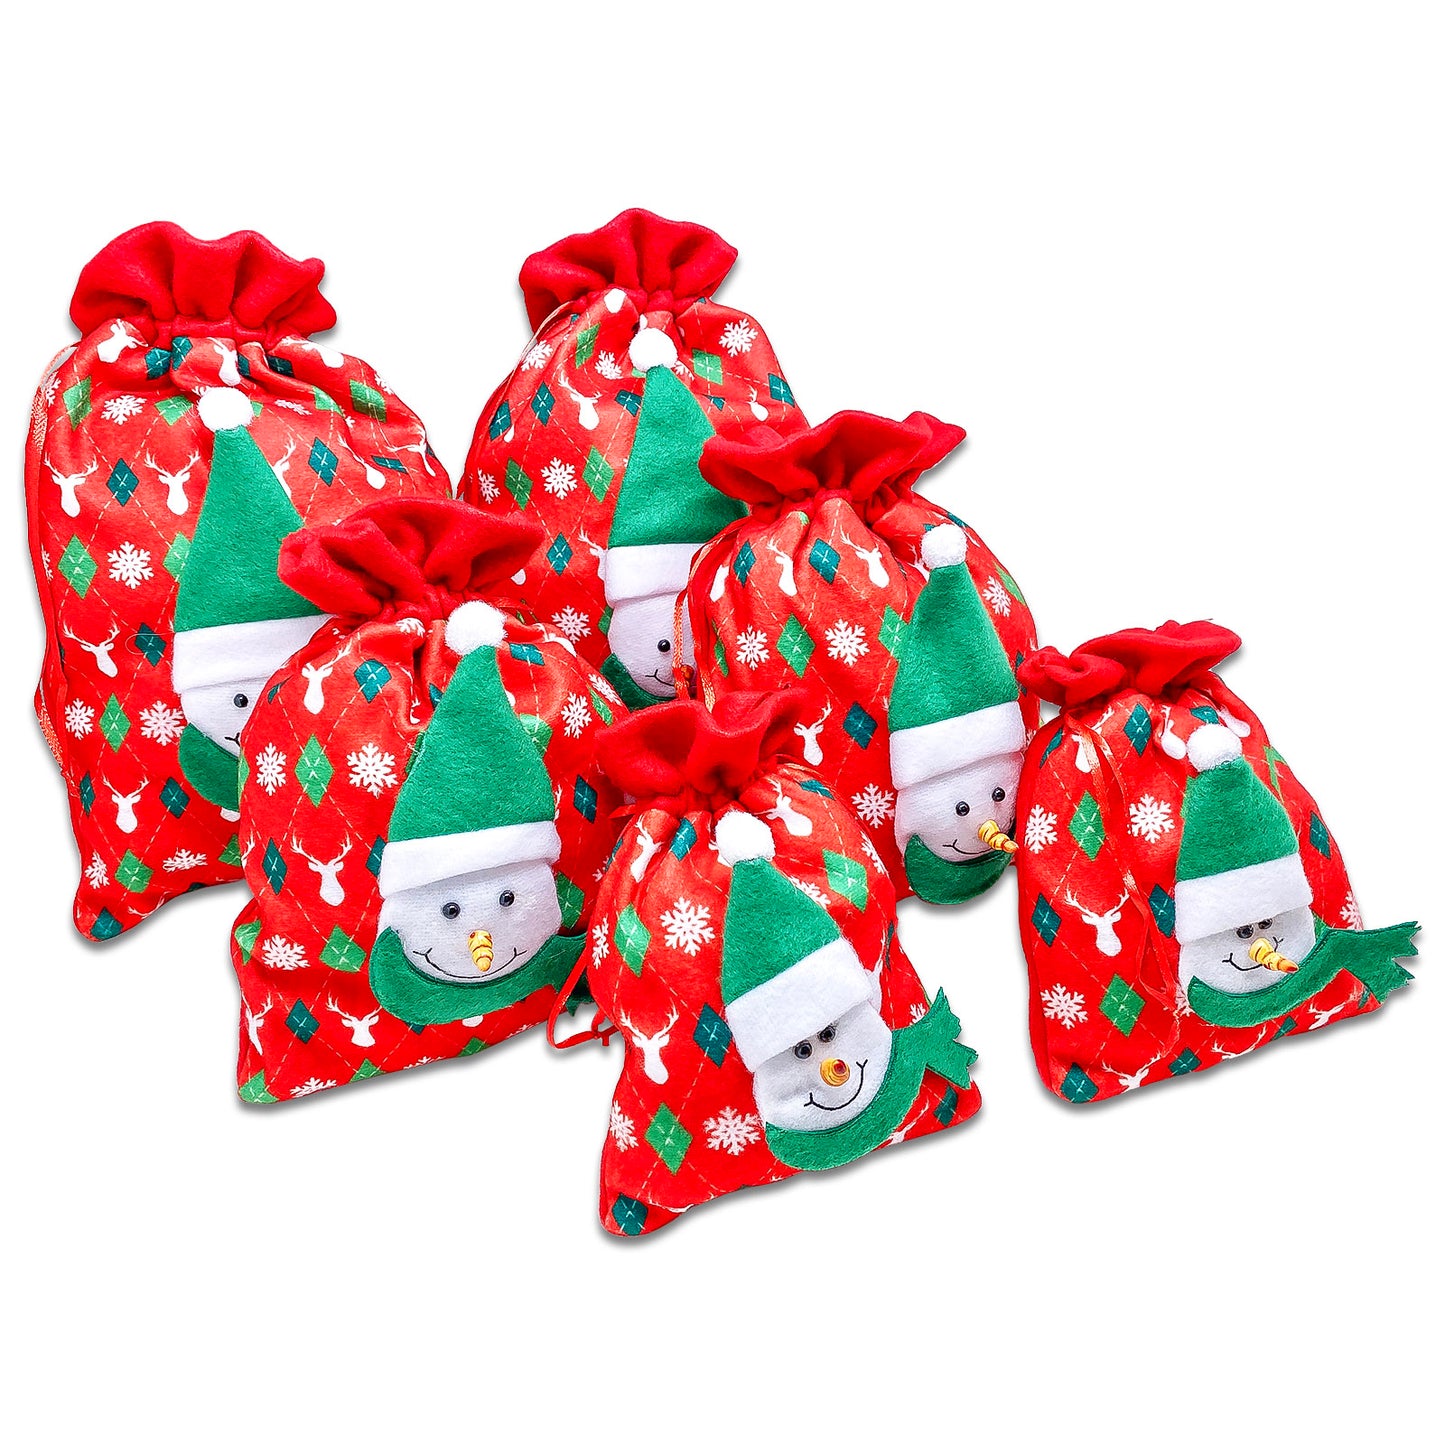 6 Pack of Satin and Velvet Snowman Christmas Drawstring Gift Bags